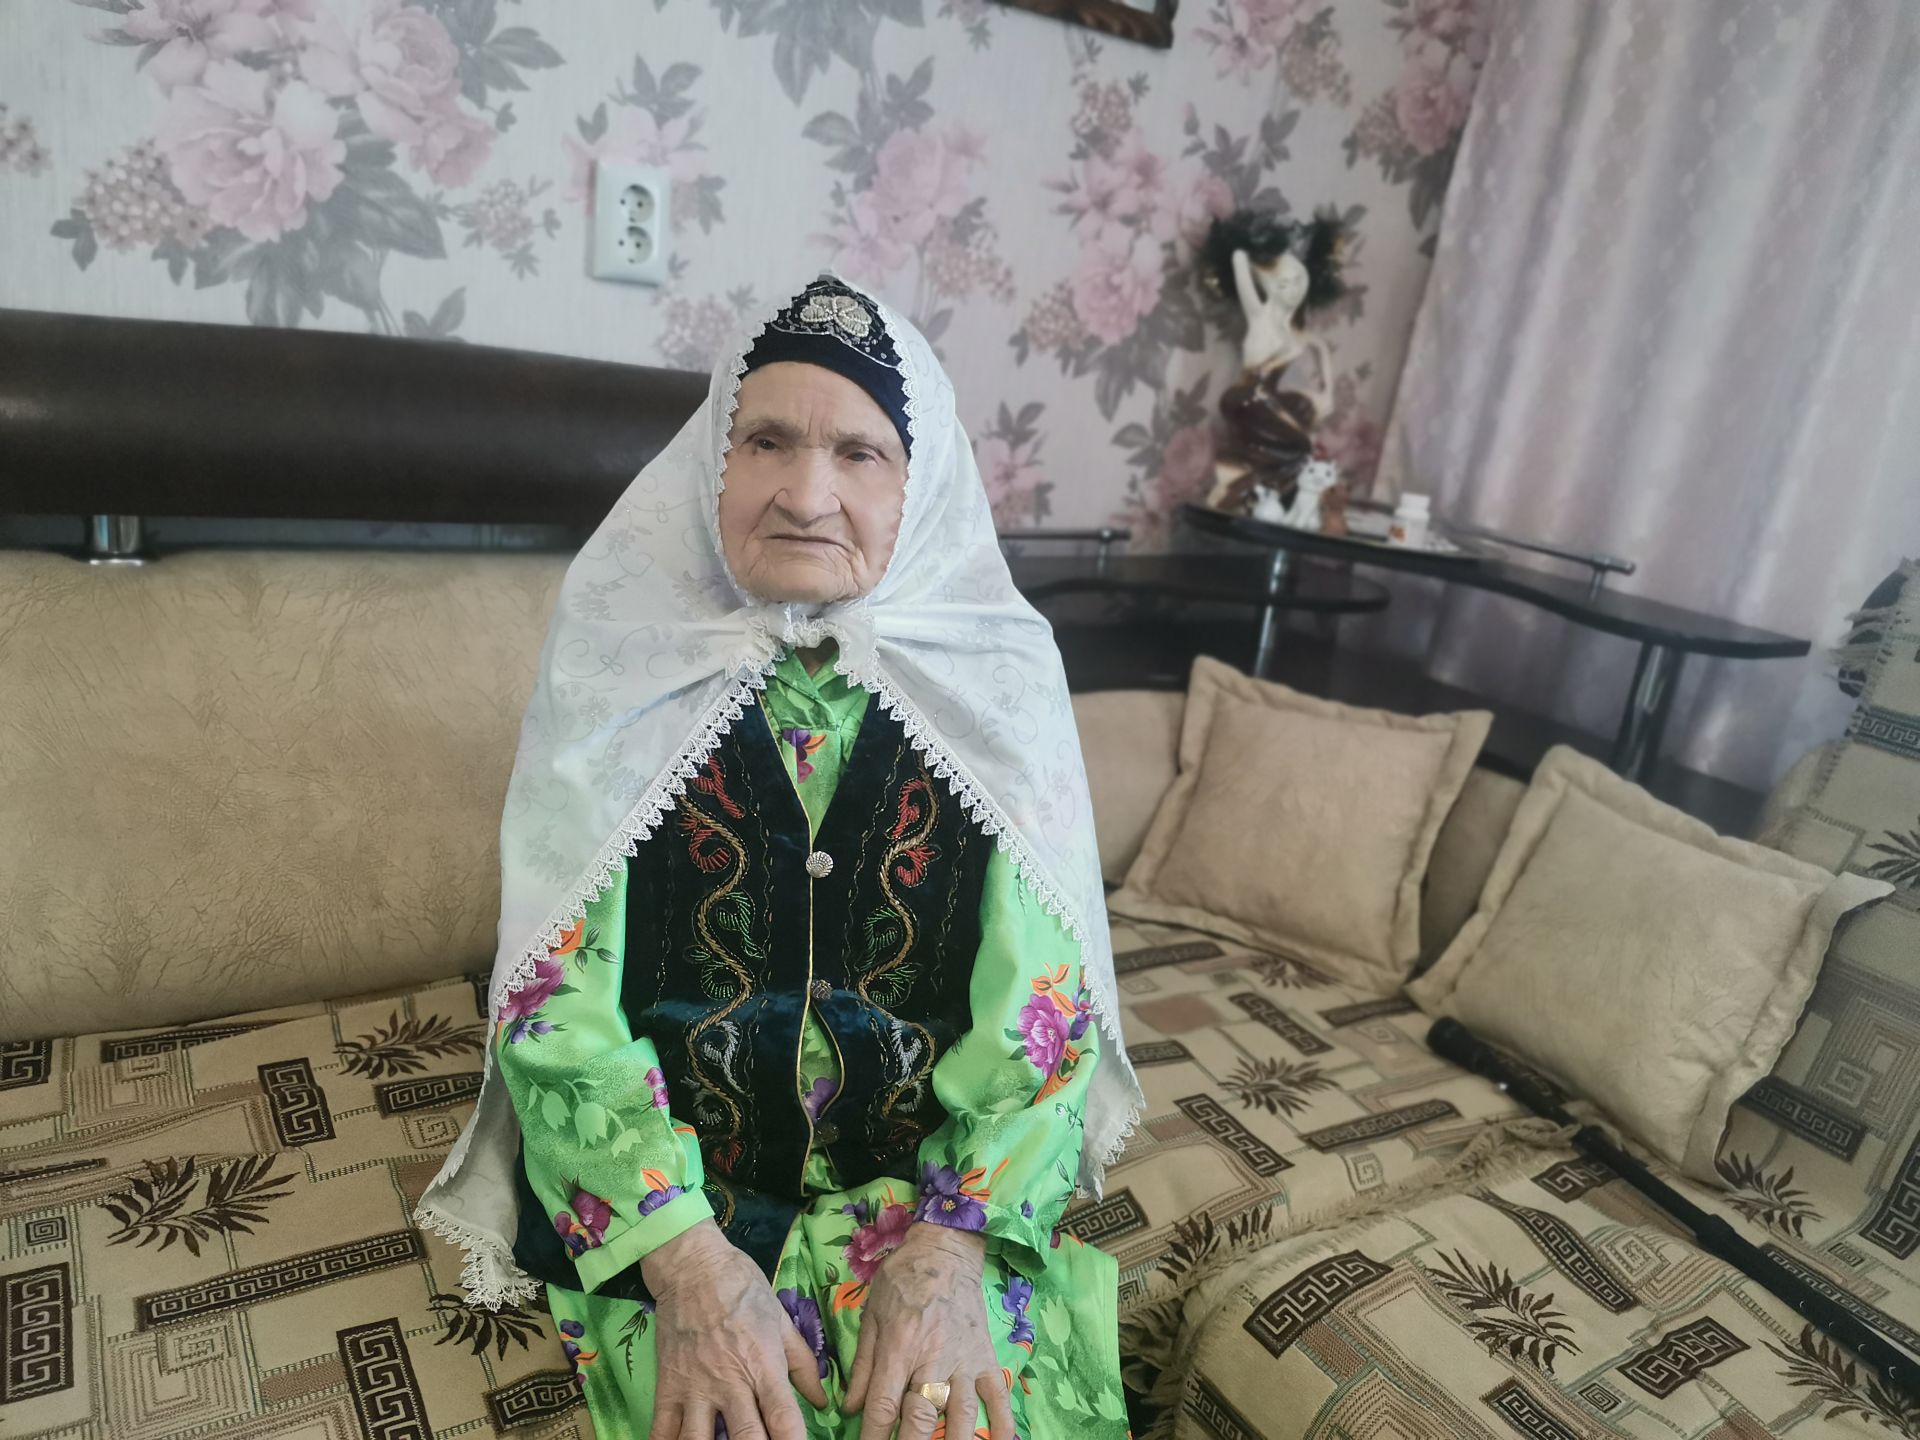 93 яшьлек Бибинур Хәлилова: “Немецлар сөтнең тамчысын да калдырмый иде”